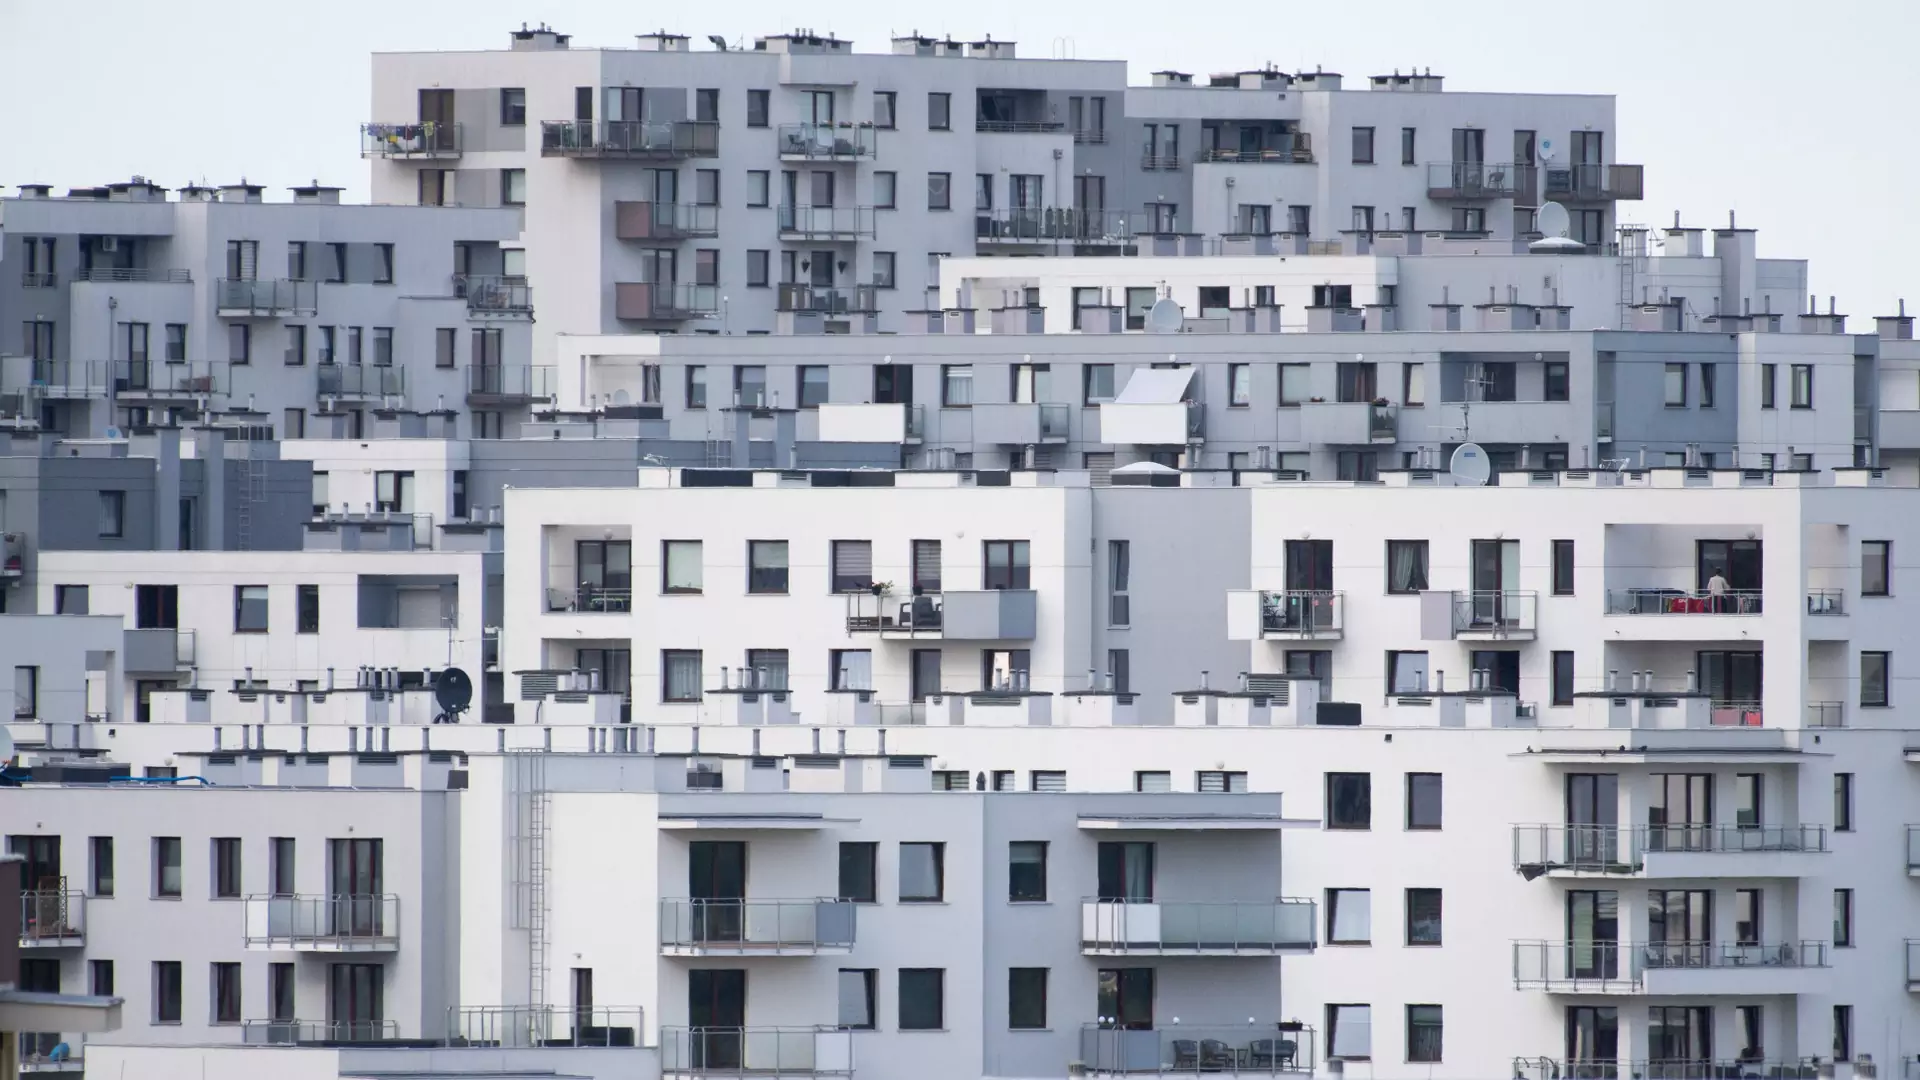 Mieszkanie za 600 tys. może być warte 480 tys. w 2022 r. Prognoza zaskakuje